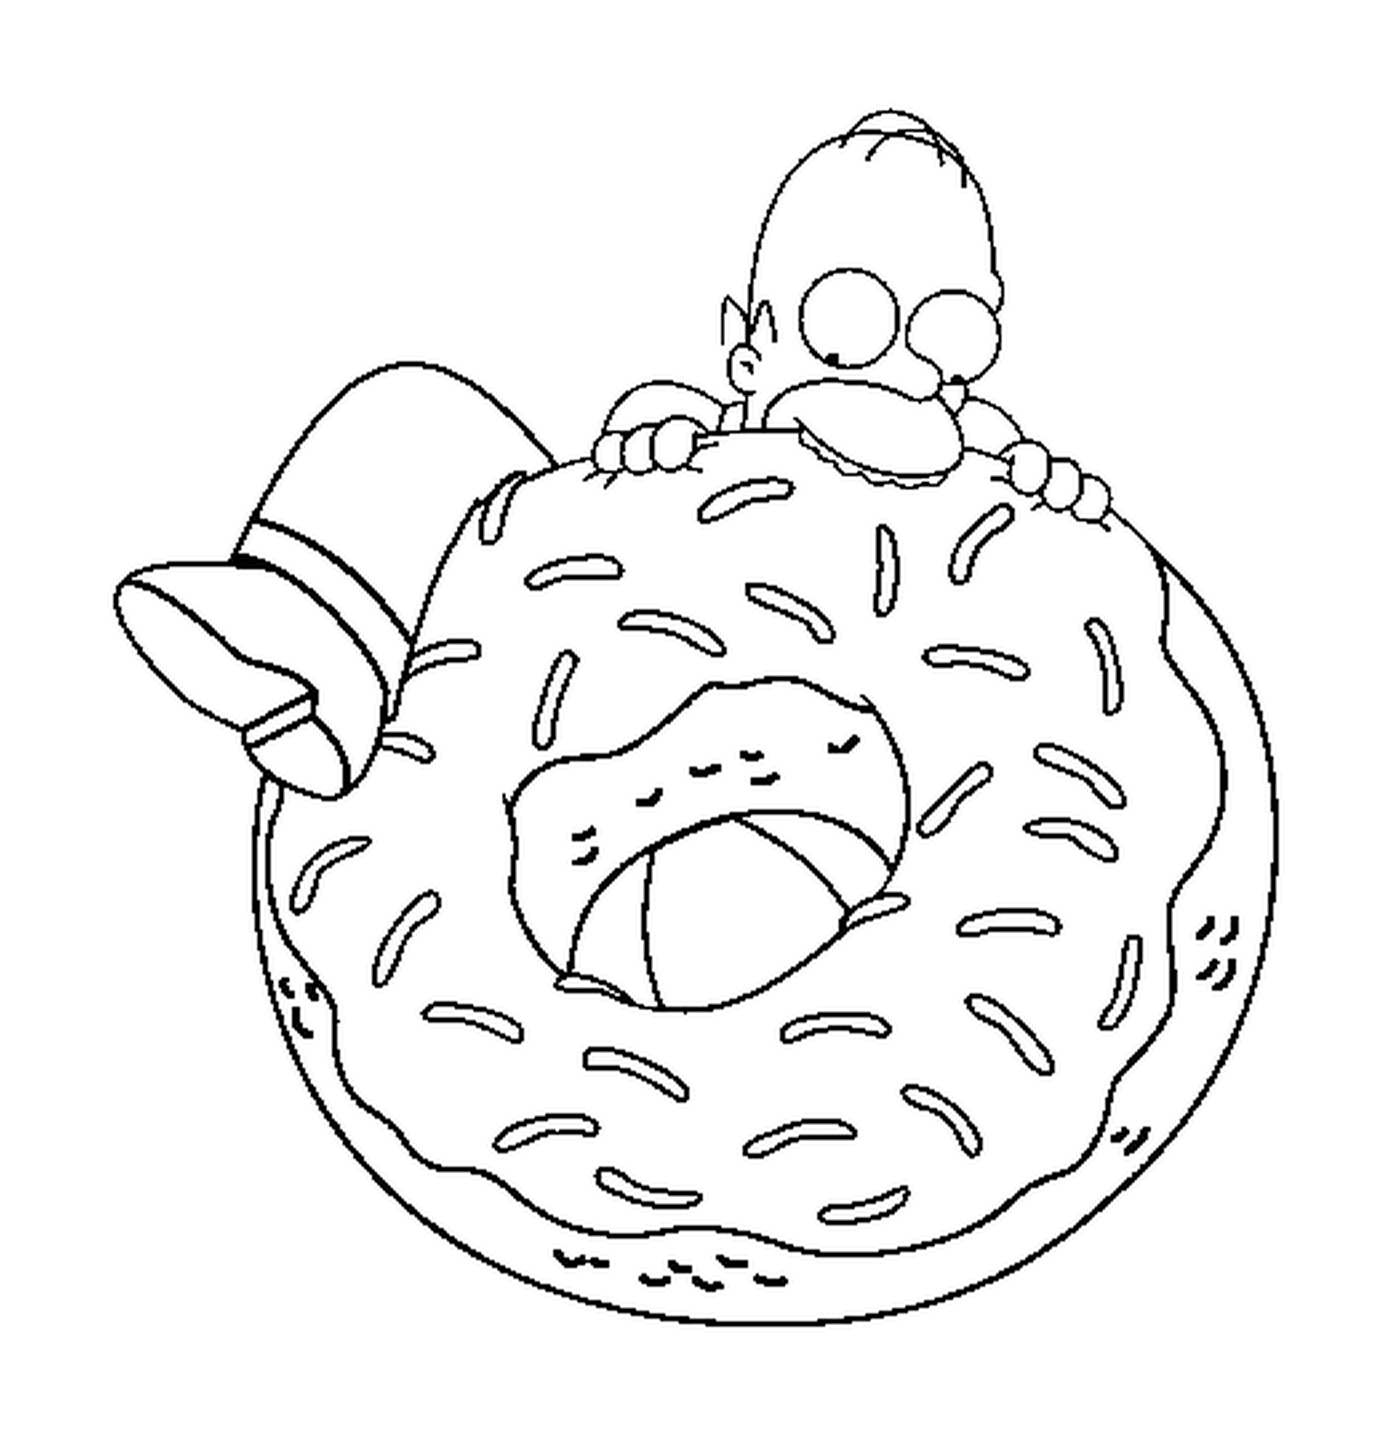  Homero trata de comer una rosquilla enorme 